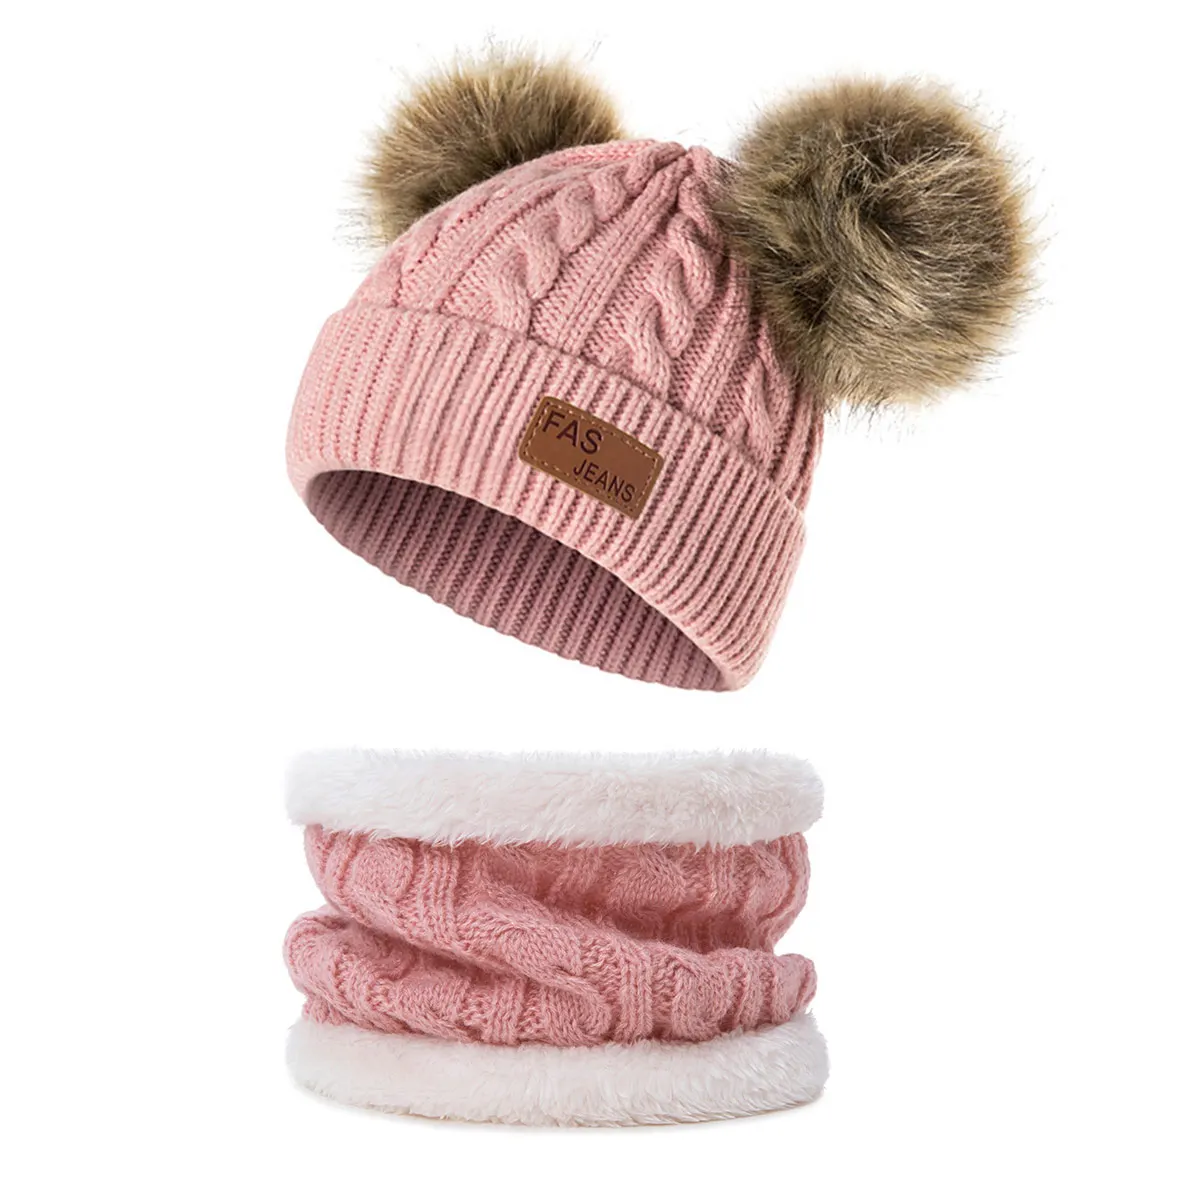 TRUENJOY/детская теплая Зимняя Шапка-бини для мальчиков и девочек, шарф-кольцо, зимние вязаные шапки для детей, Меховые помпоны Skullies Beanies, шапка